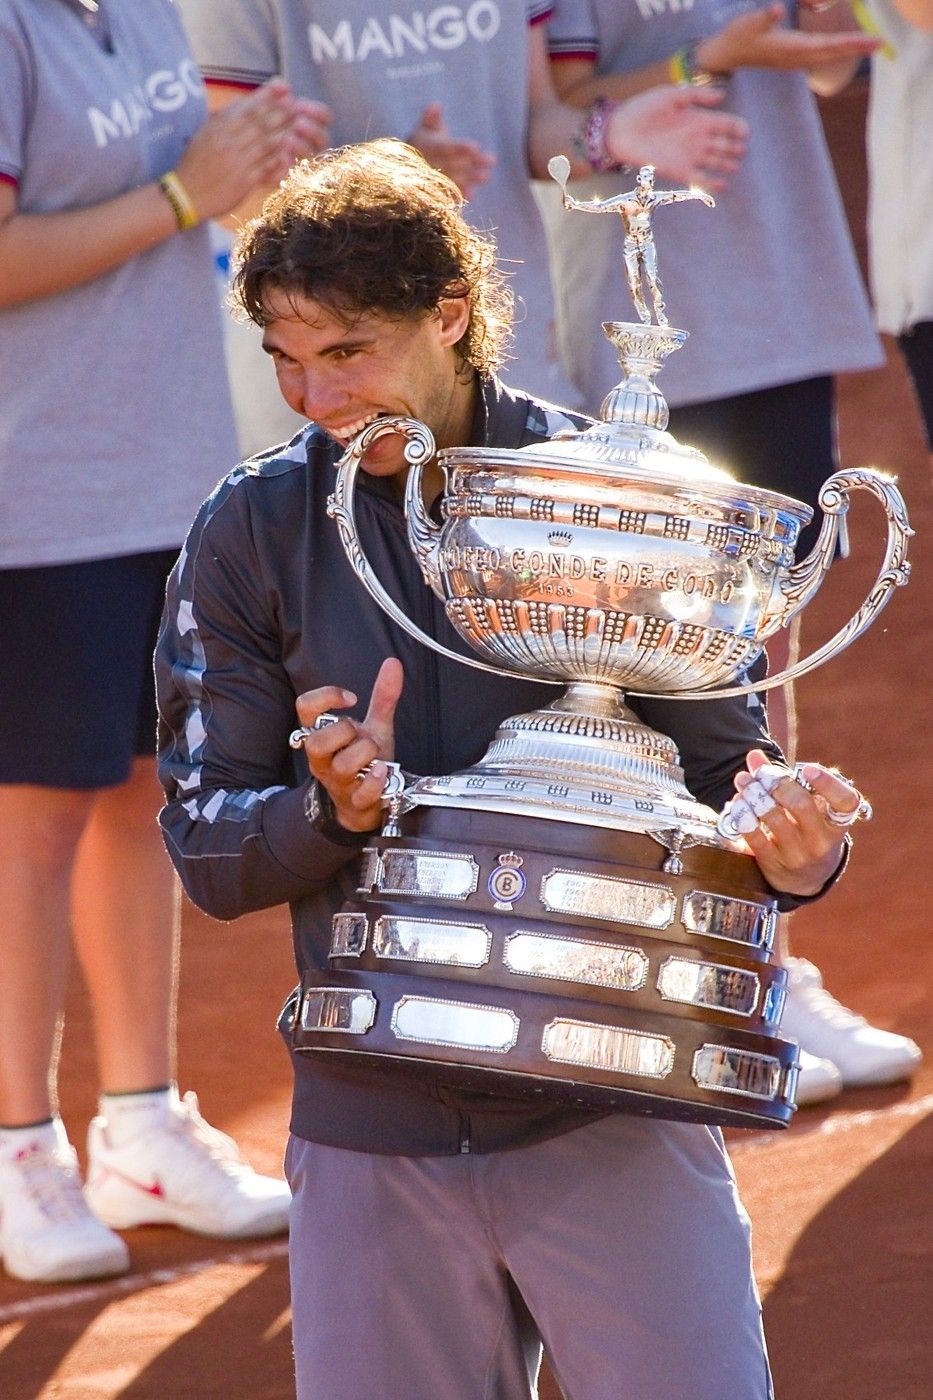 2012 - O jediný set připravil Nadala až ve finále Djokovič, své soupeře jinak drtil rodák z Mallorky až neskutečným způsobem. Ferrer na něj v semifinále uhrál pouhých pět gamů.